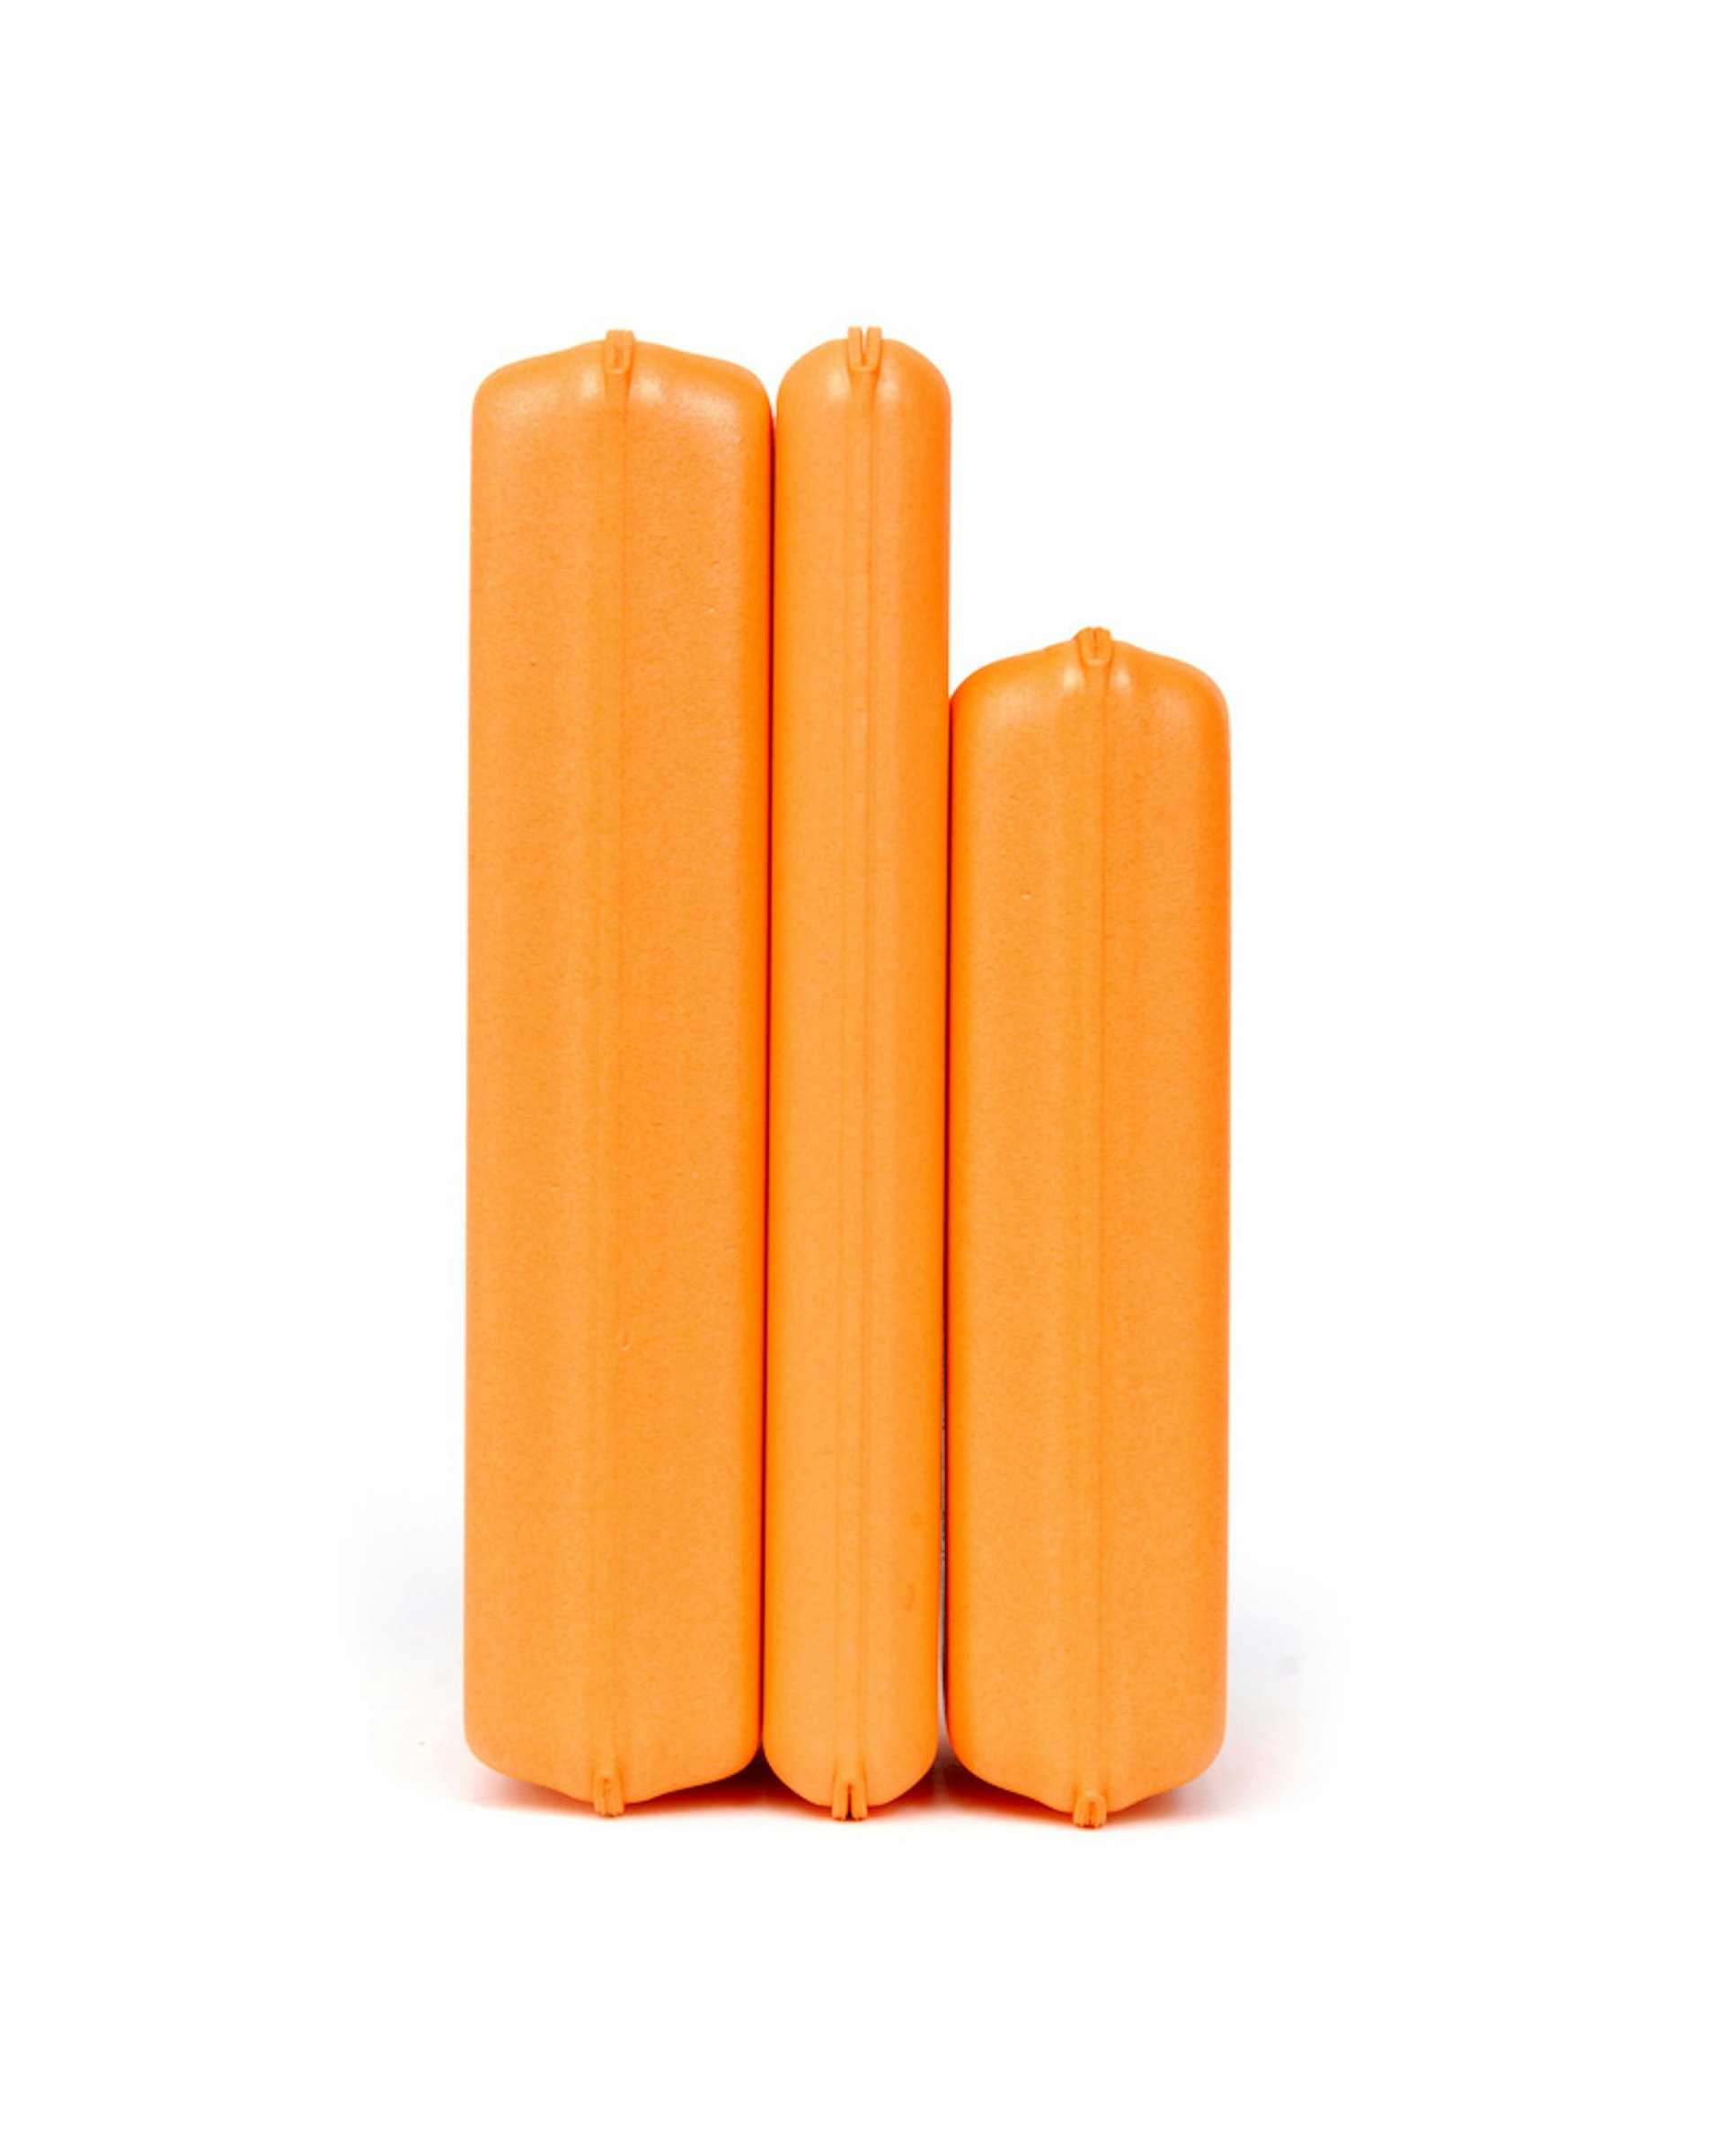 Ultralight Foam Box Orange S (bild 2 av 3)